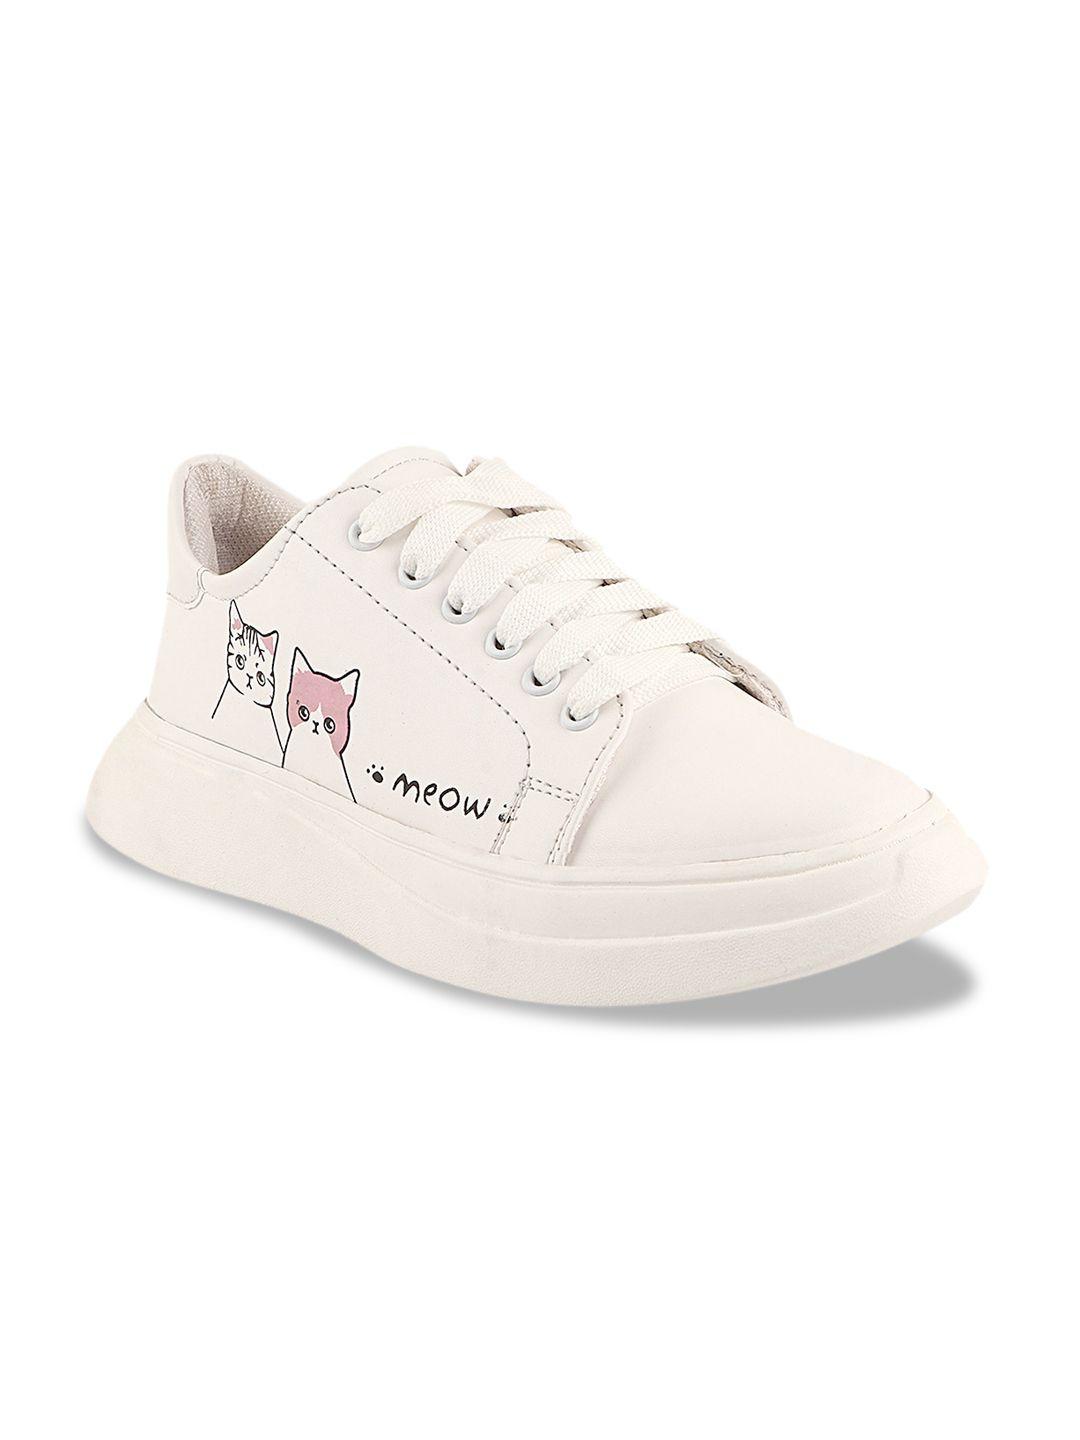 shoetopia women white printed sneakers